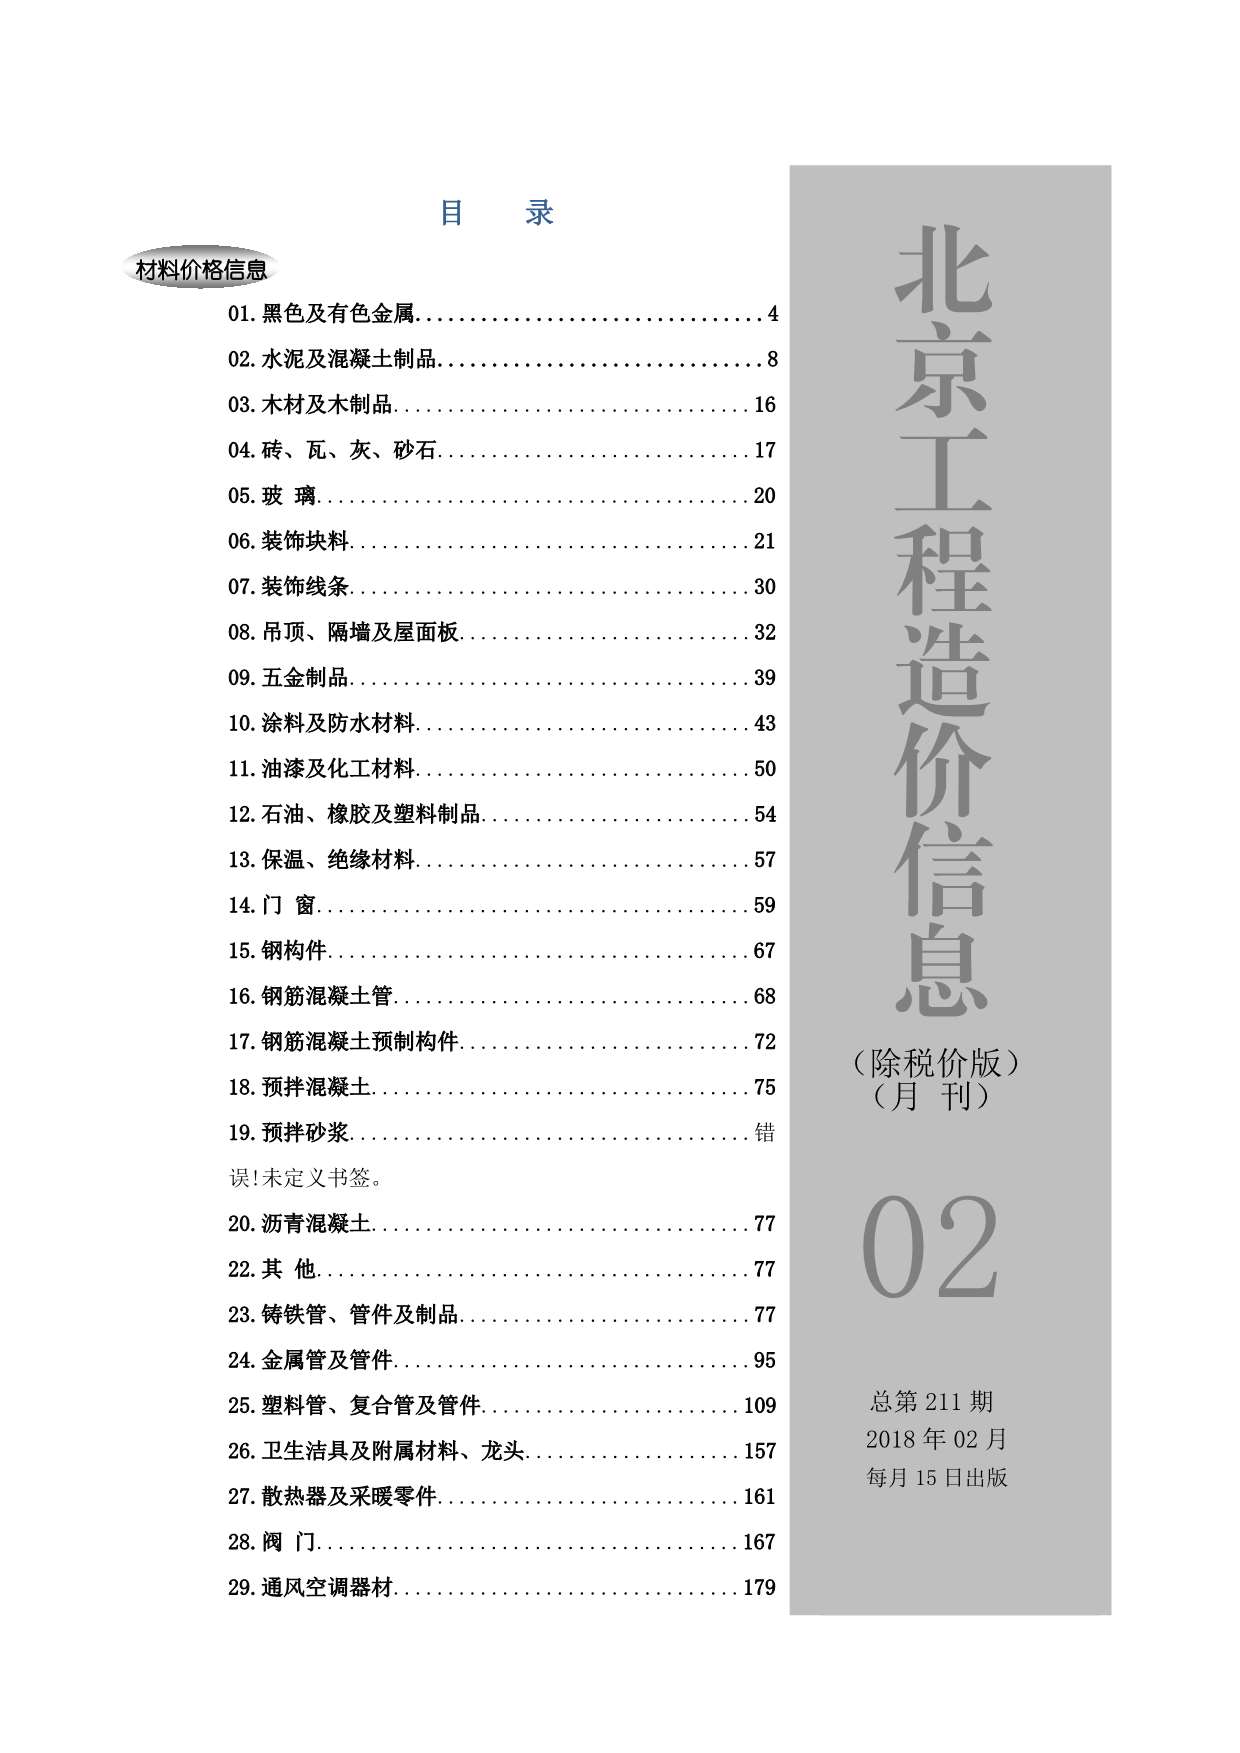 2018年2期北京除税价版造价库文档